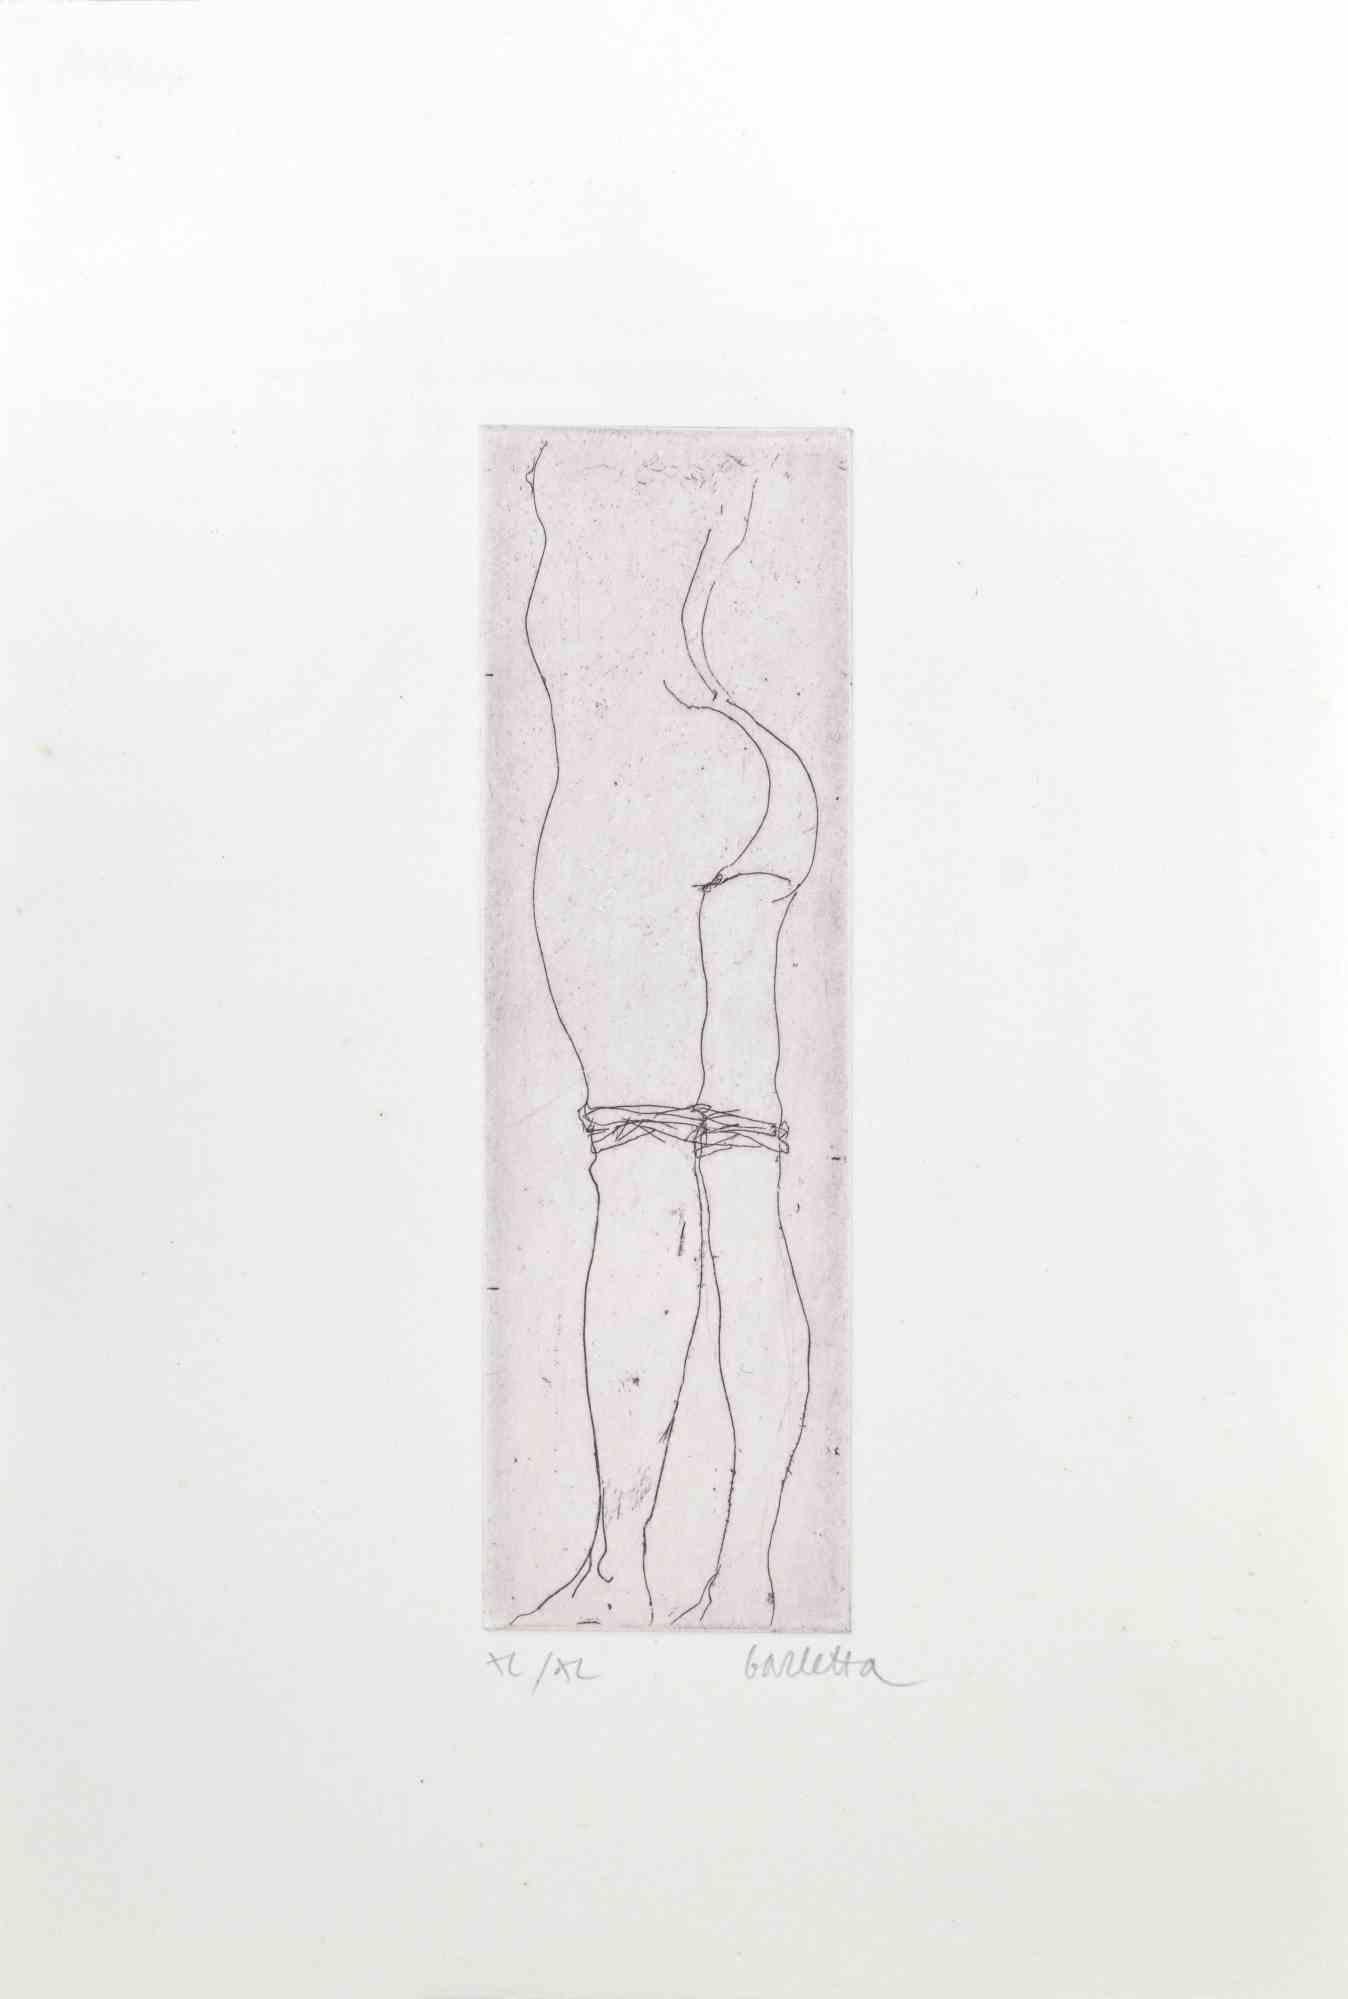 Nude ist eine Radierung auf Karton von Sergio Barletta aus dem Jahr 1974. 

Maße des Blattes: 25 x 17 cm.

Ausgabe XL/XL

Handsigniert mit Bleistift am unteren rechten Rand.

Guter Zustand
